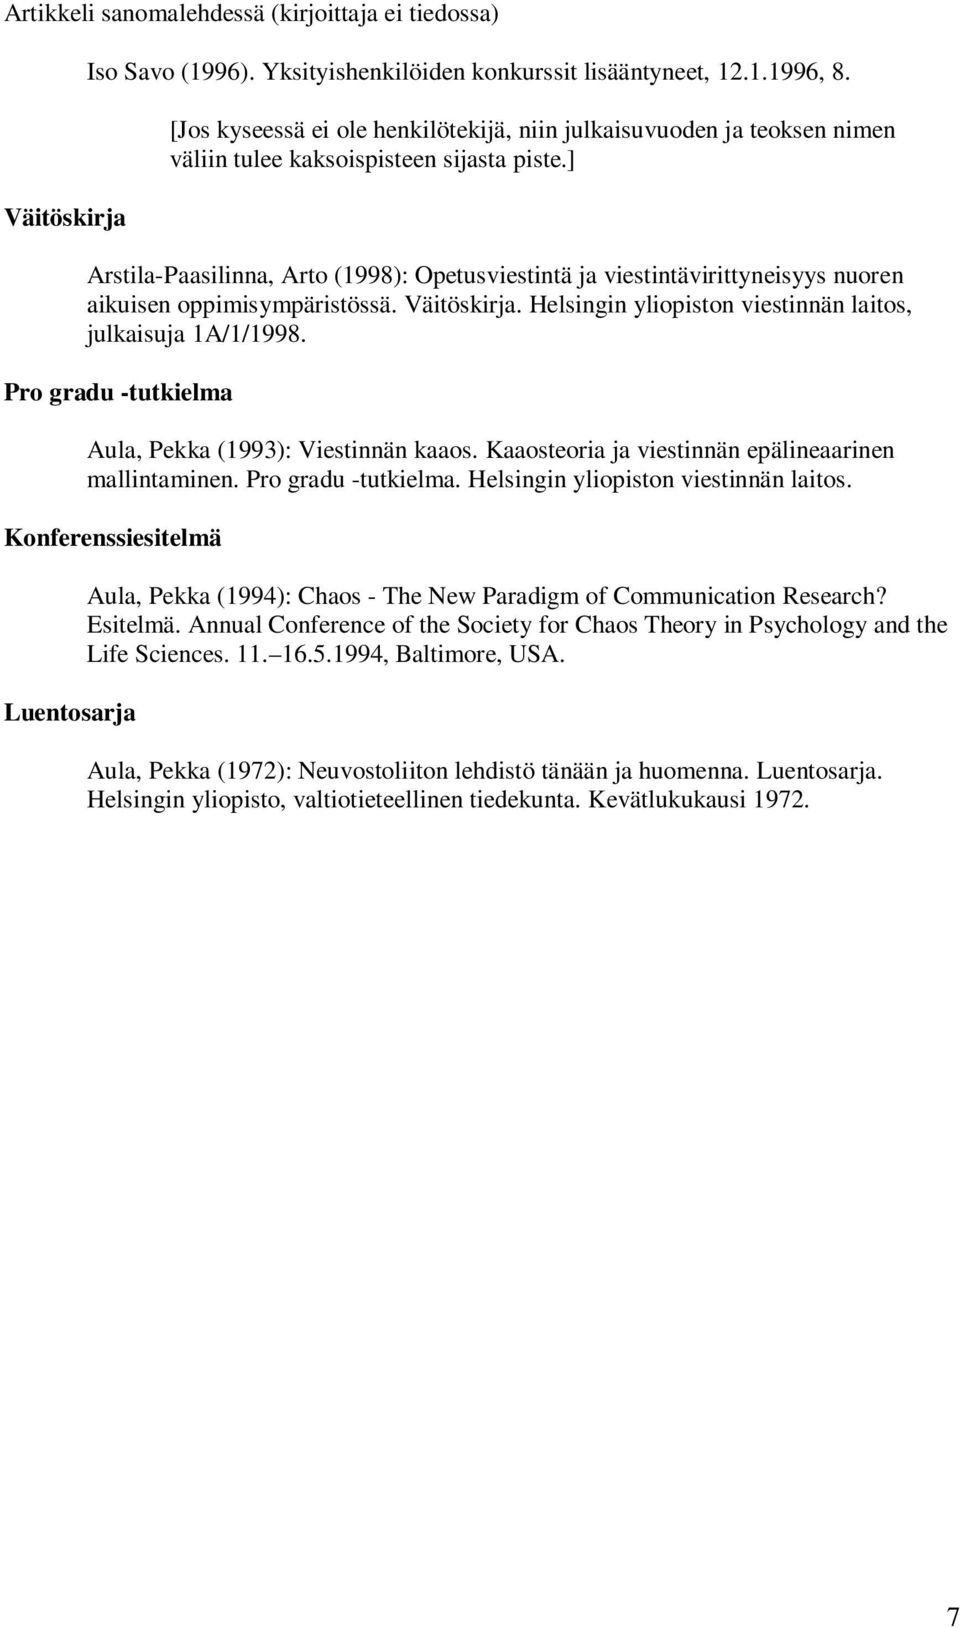 ] Arstila-Paasilinna, Arto (1998): Opetusviestintä ja viestintävirittyneisyys nuoren aikuisen oppimisympäristössä. Väitöskirja. Helsingin yliopiston viestinnän laitos, julkaisuja 1A/1/1998.